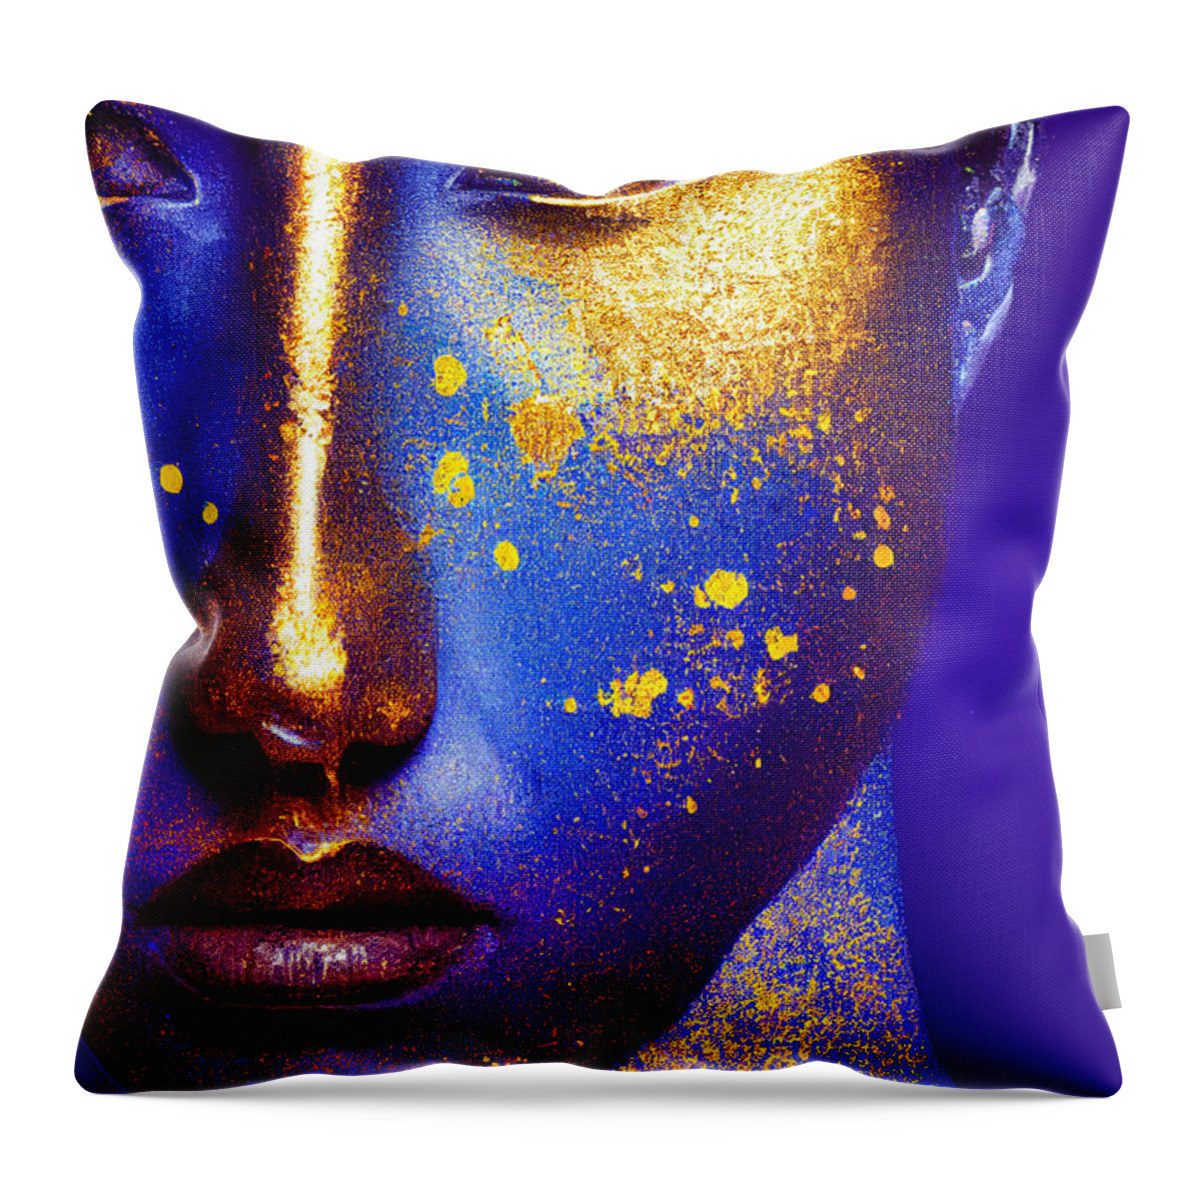 Golden Throw Pillow featuring the digital art Golden Blues by Craig Boehman